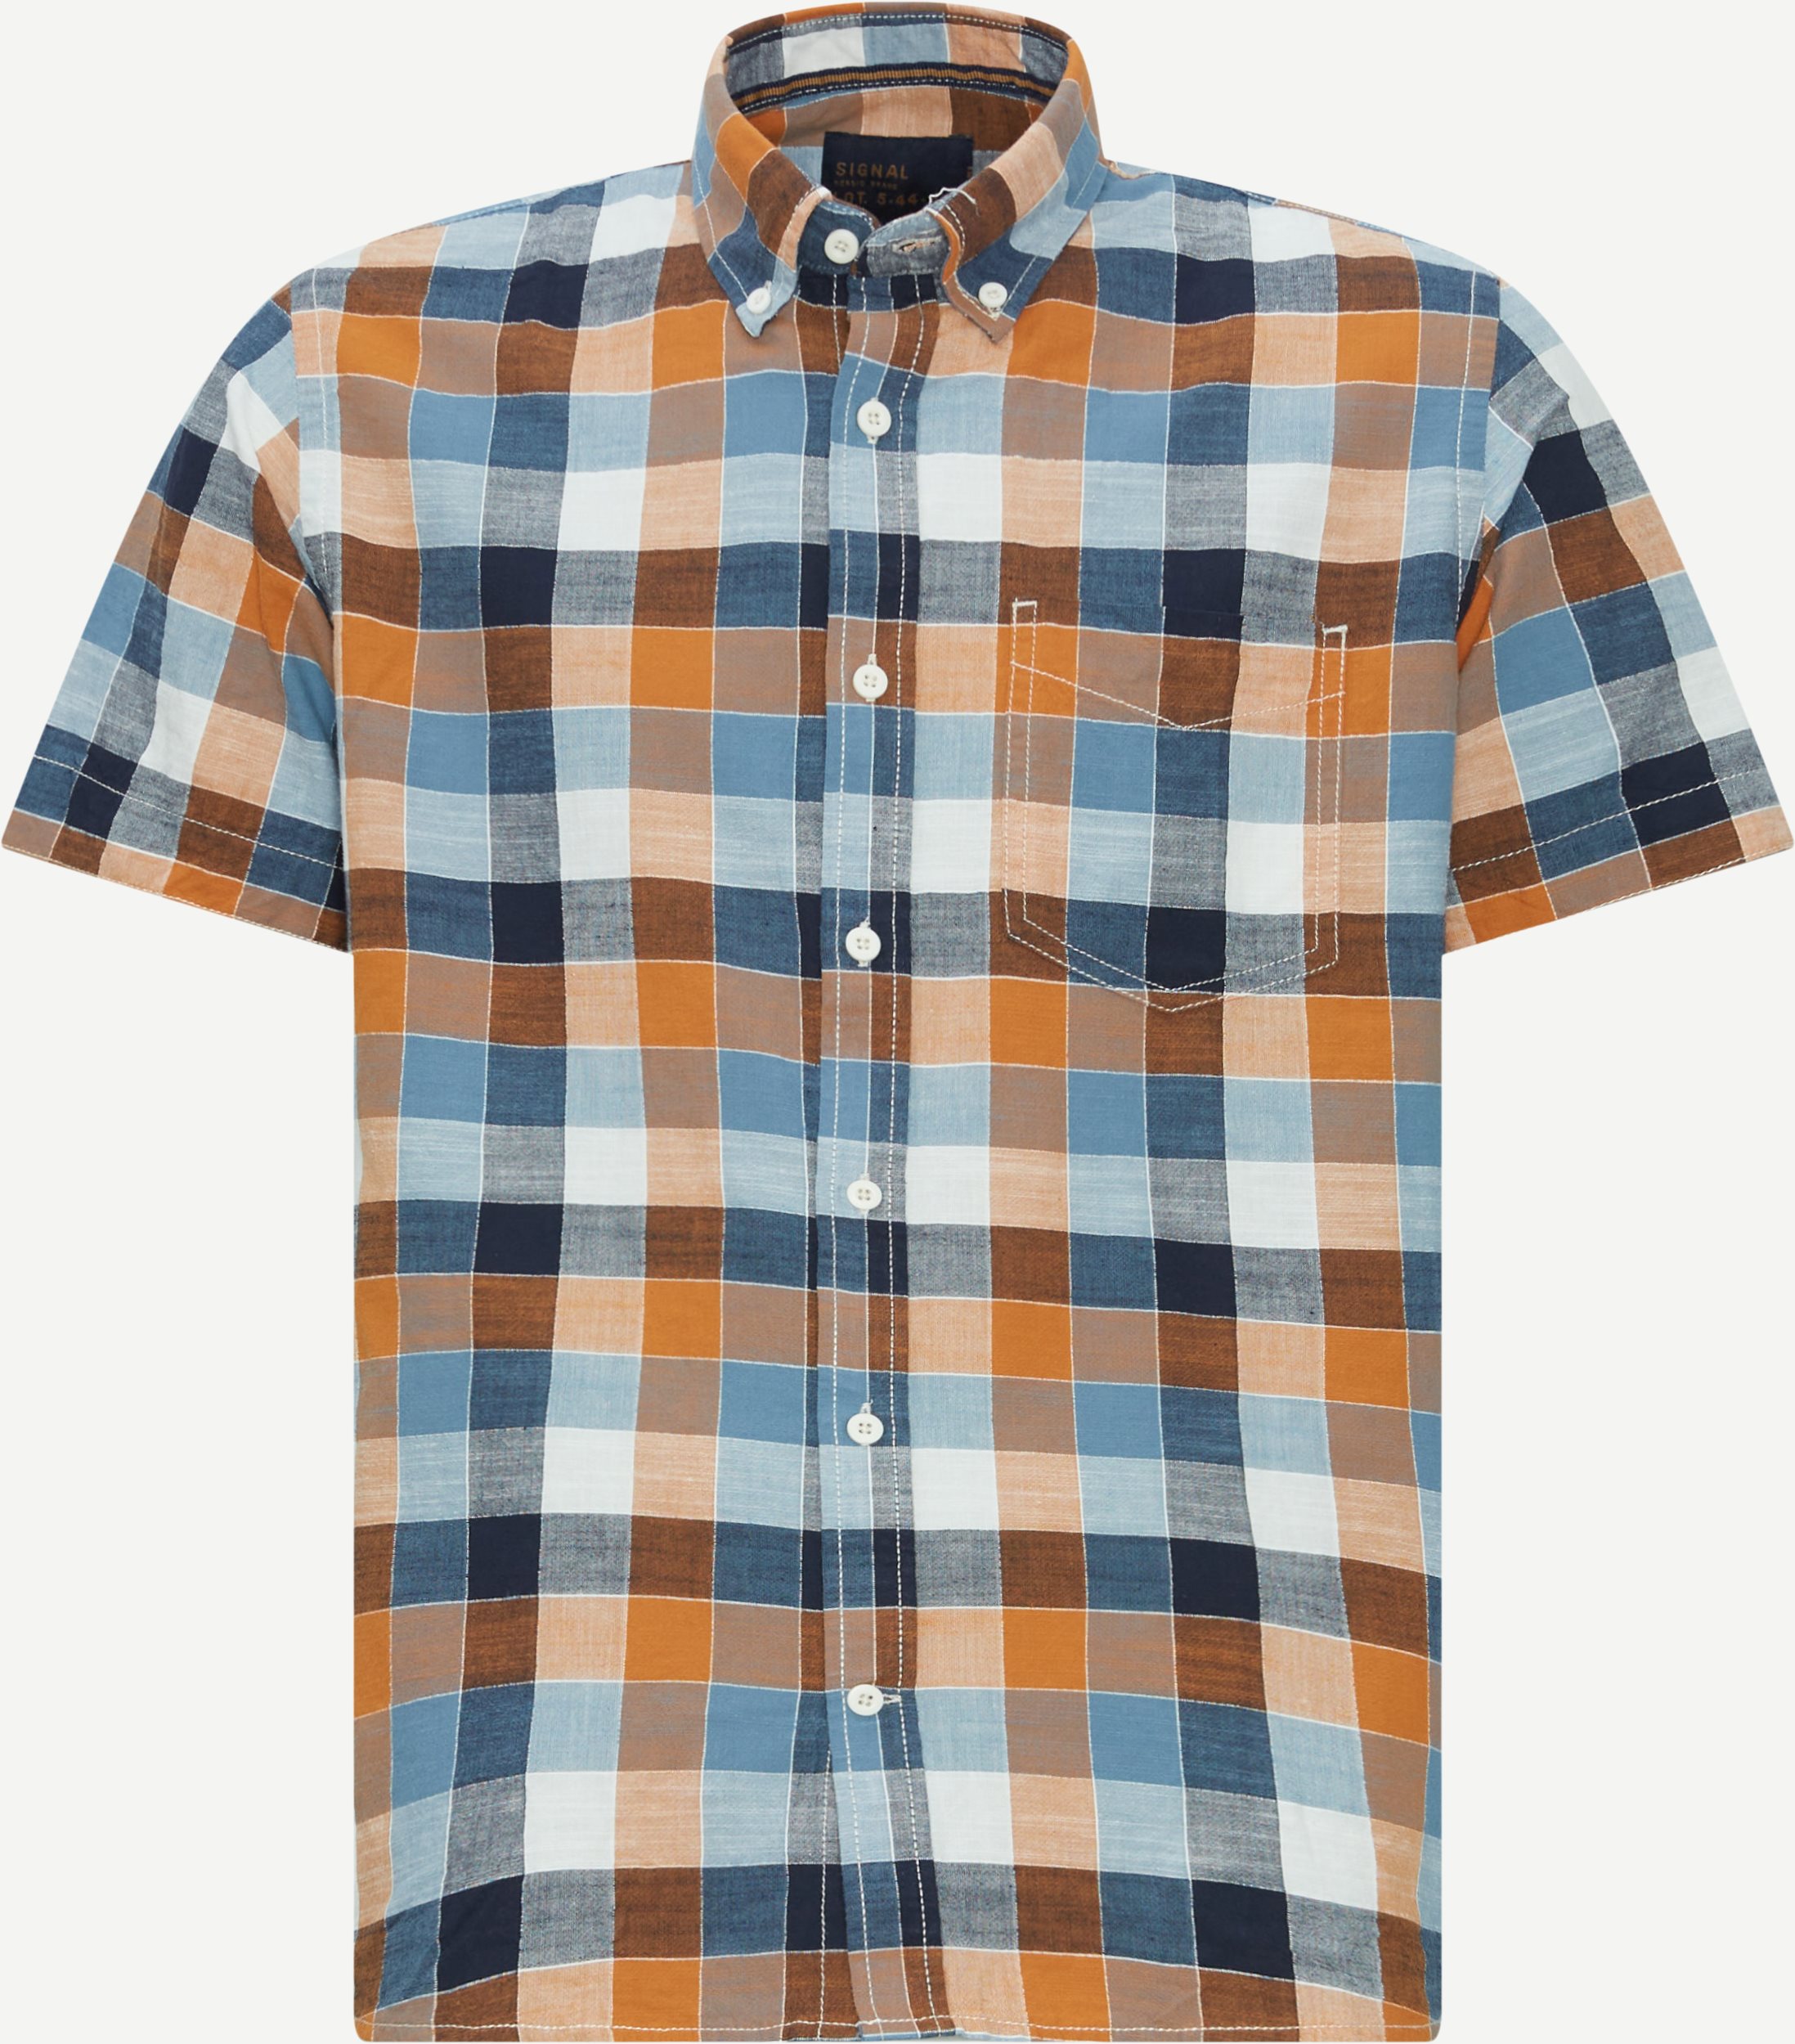 Signal Short-sleeved shirts 15632 1961 Orange